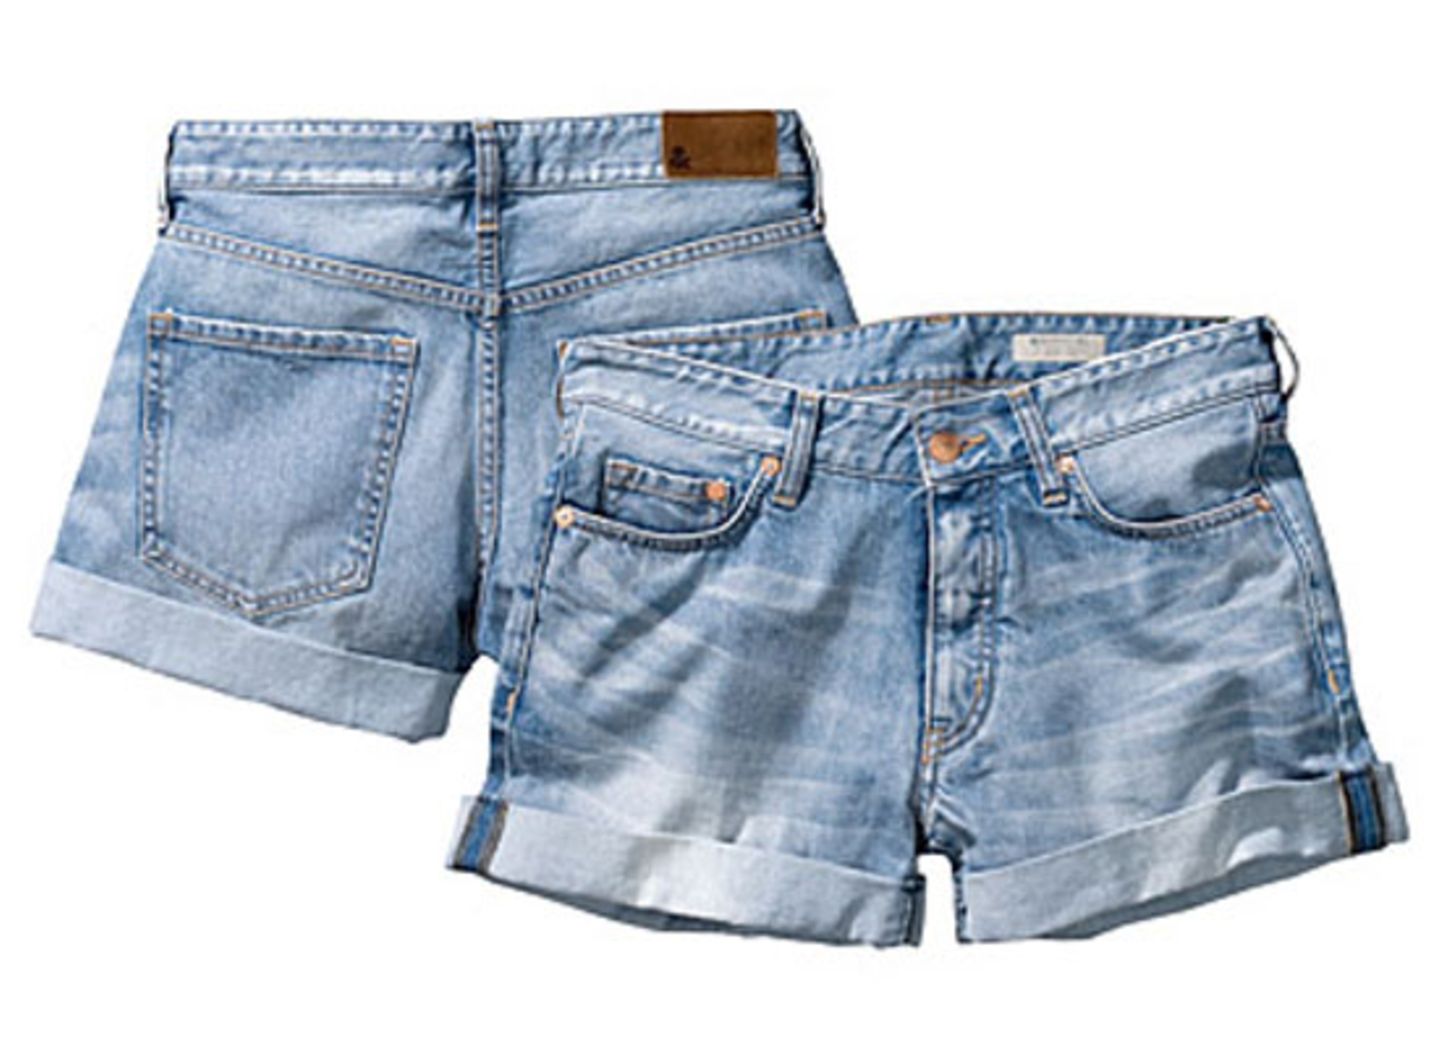 Wir lieben Jeans-Shorts! Diese hier sind von H&M, um 25 Euro.